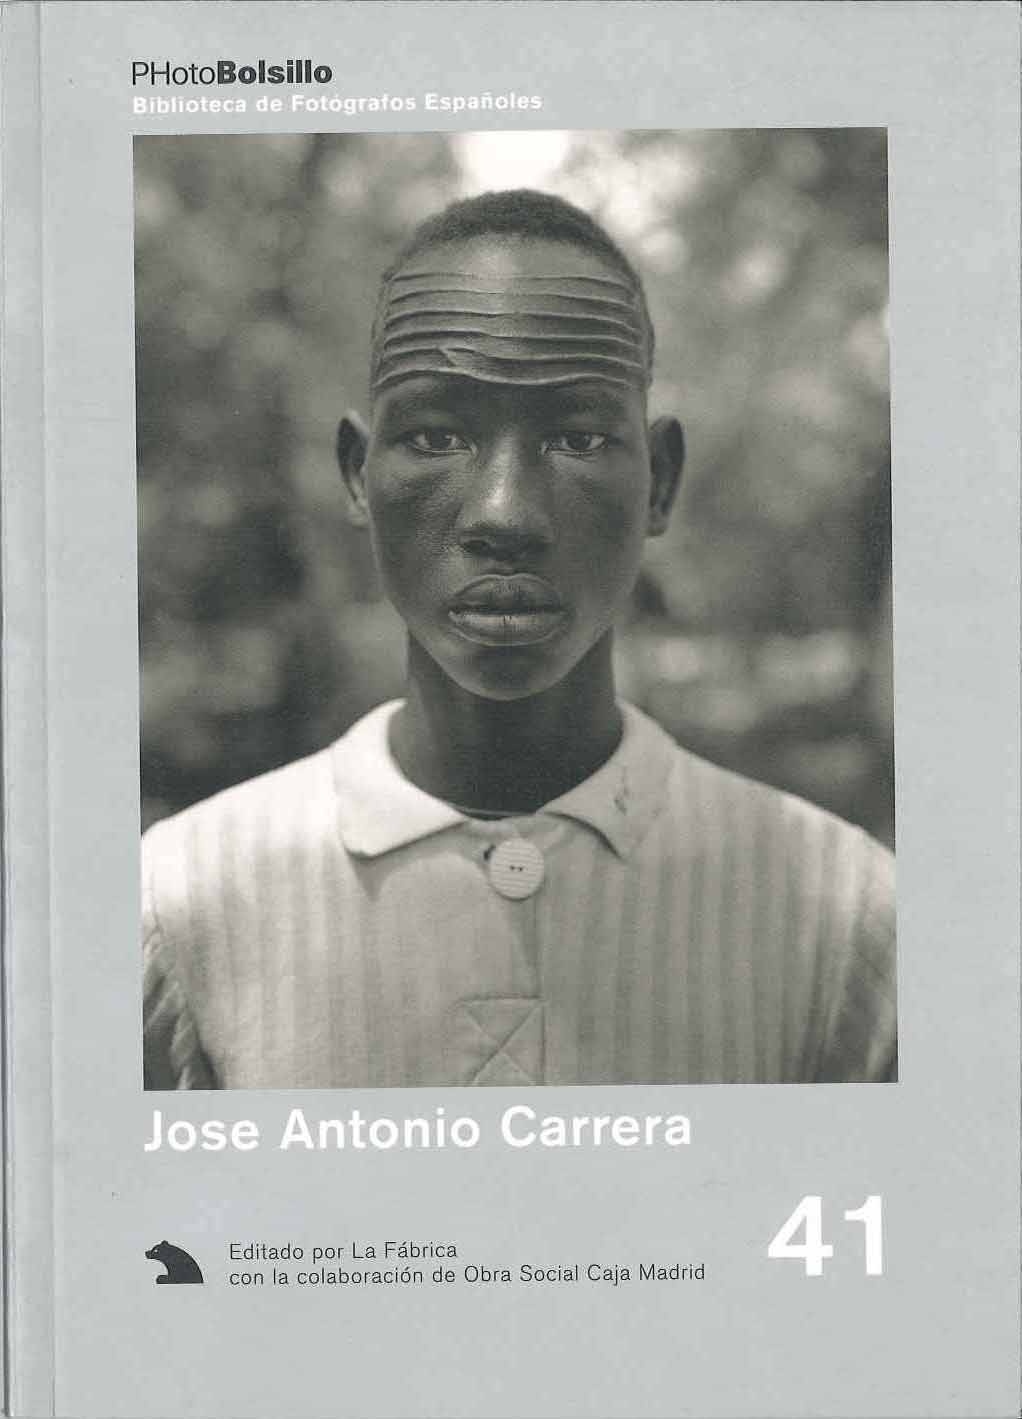 José Antonio Carrera